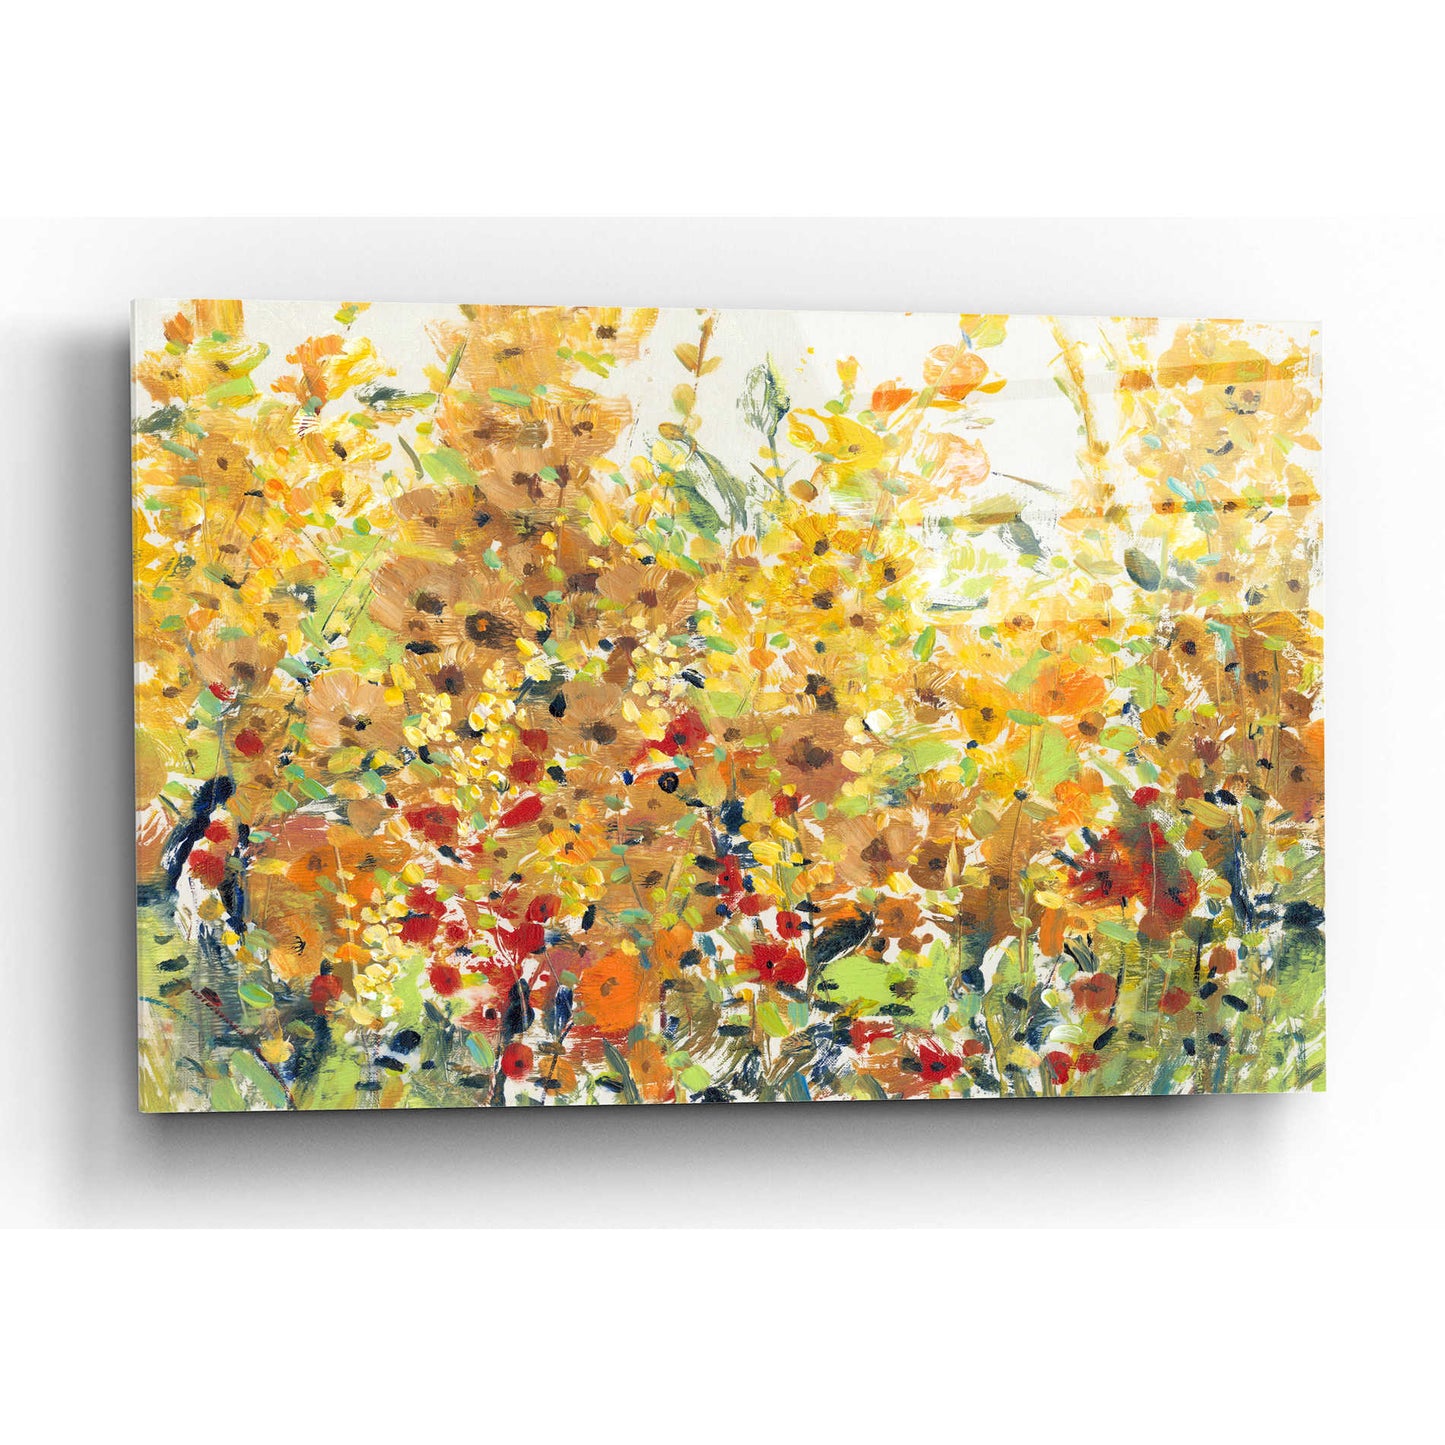 Epic Art 'Golden Summer Garden II' by Tim O'Toole, Acrylic Glass Wall Art,16x12